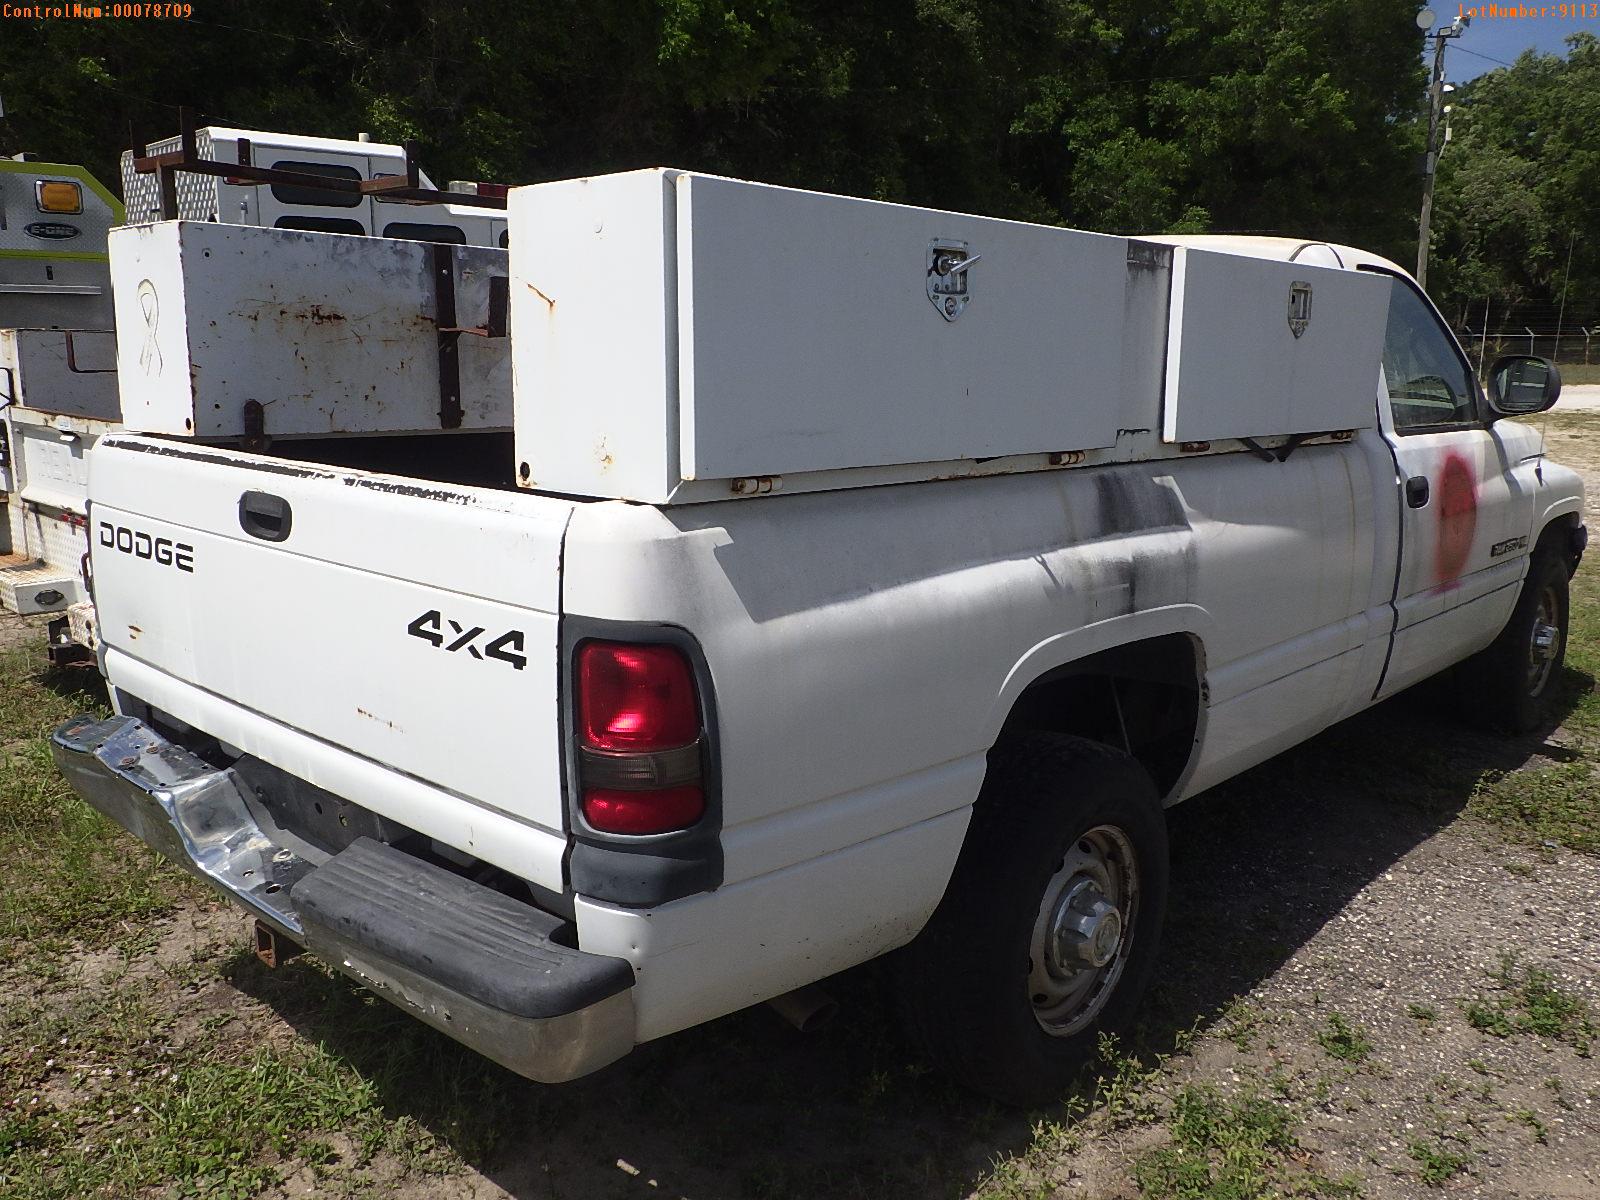 4-09113 (Trucks-Pickup 2D)  Seller: Florida State D.M.A. 2002 DODG 2500